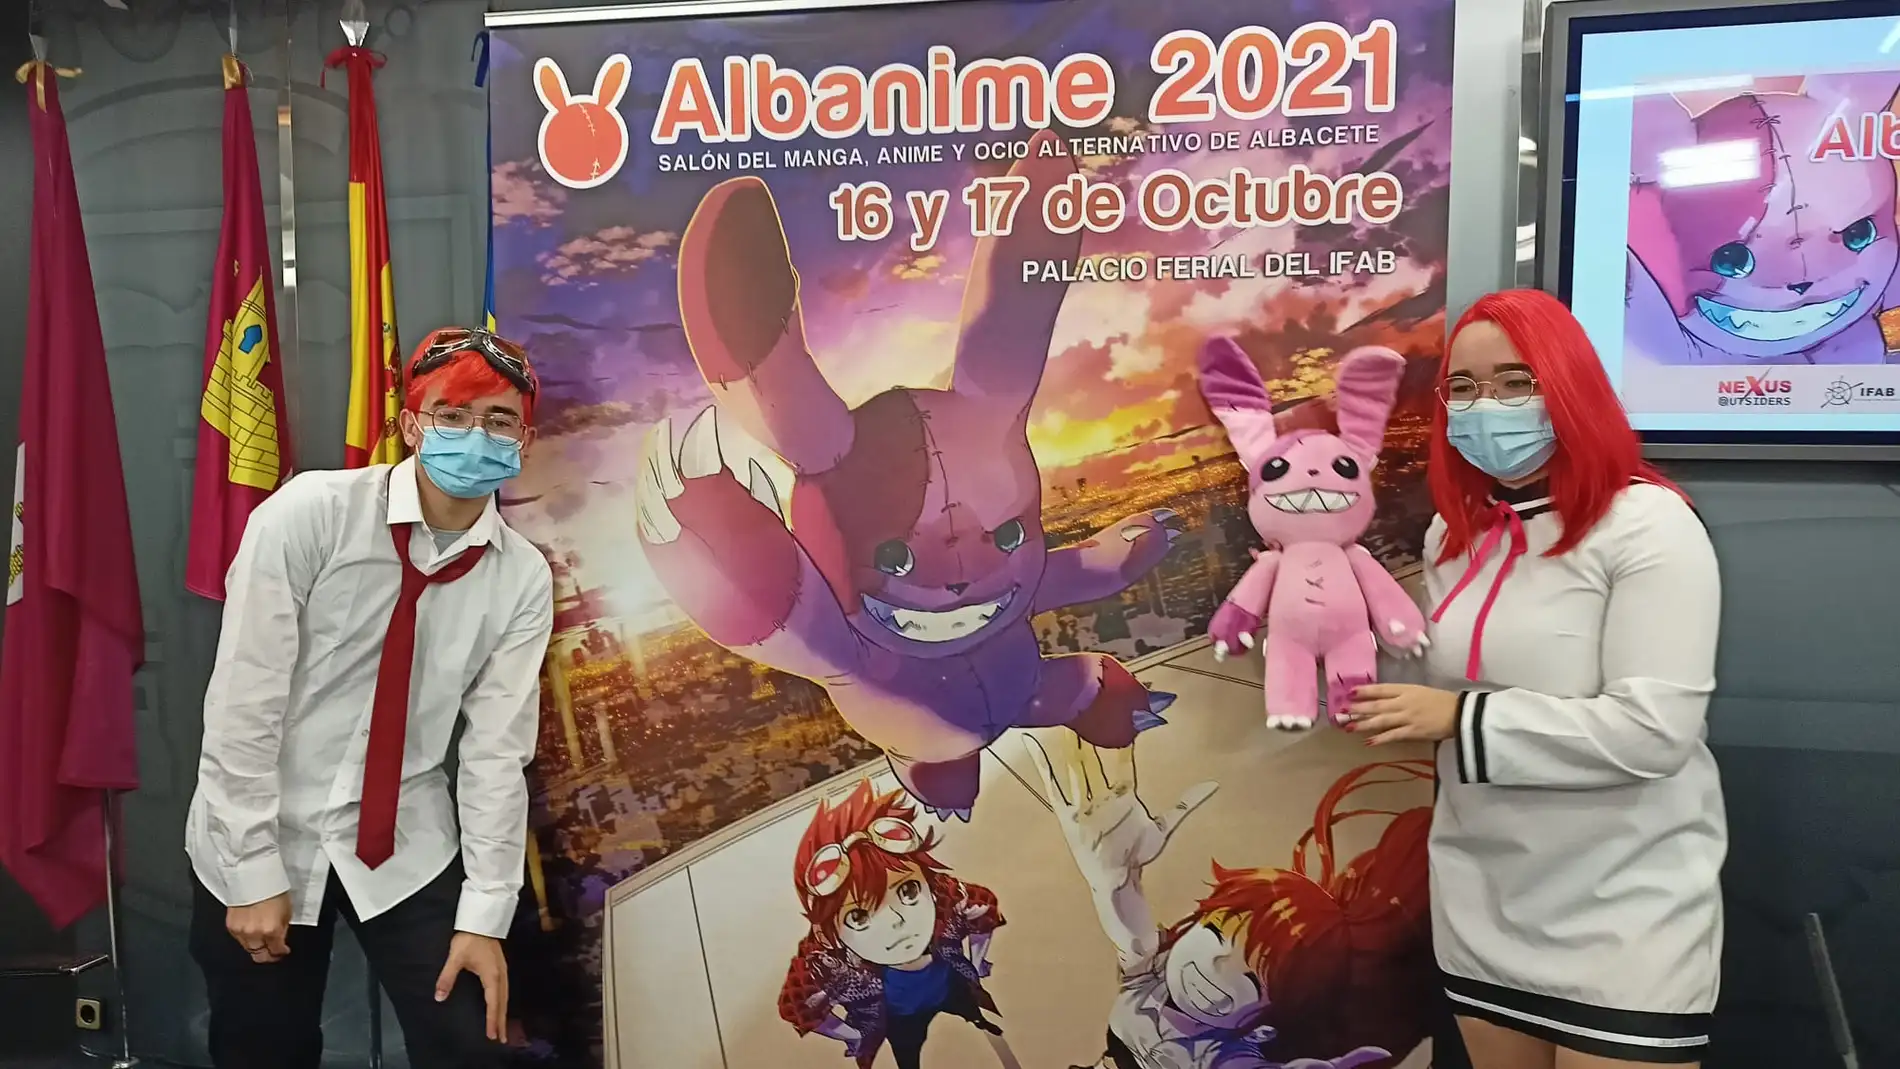 Albanime regresa tras un año de parón con 150 actividades los días 16 y 17 de octubre